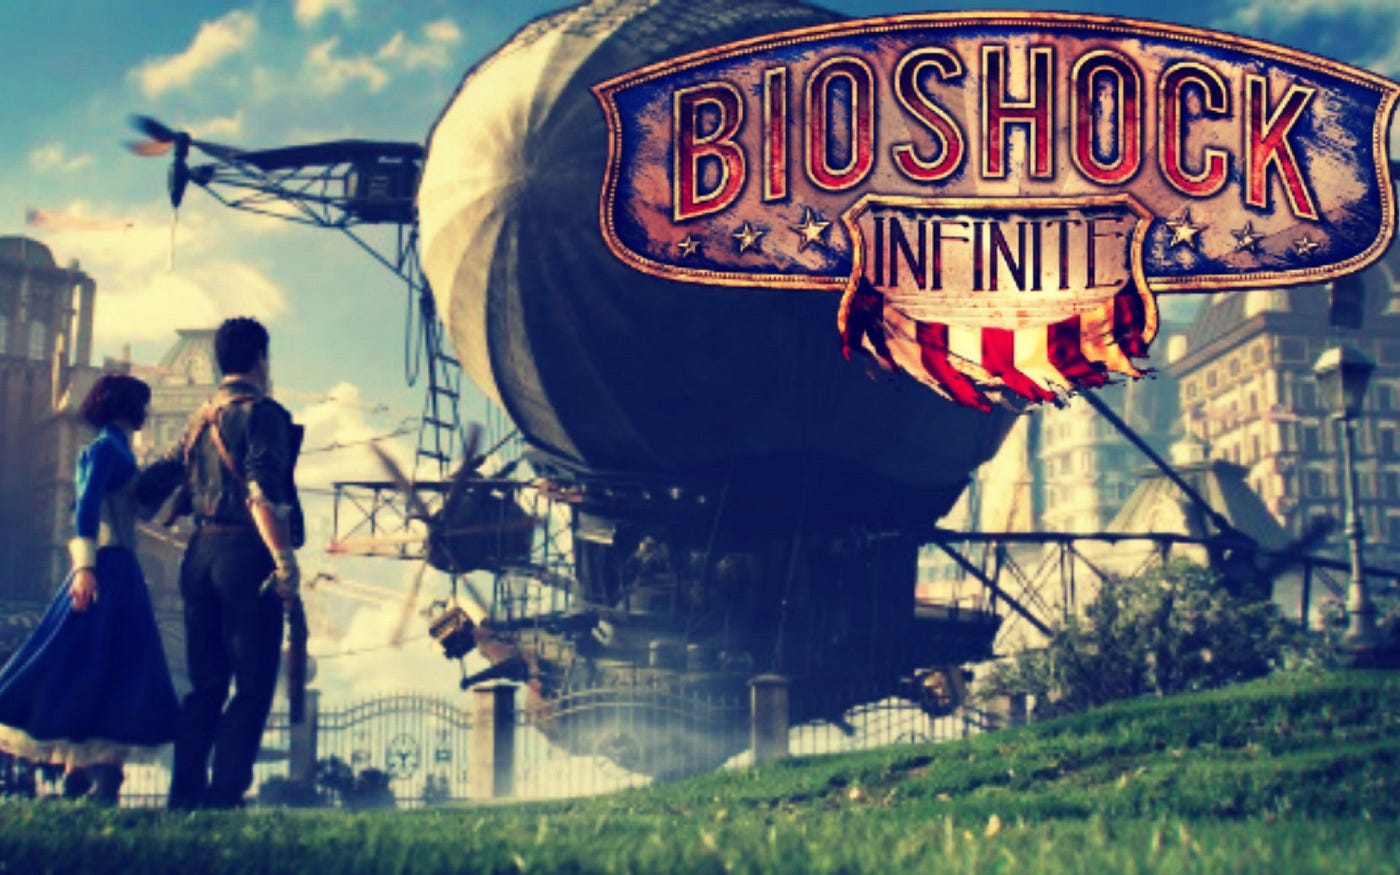 My Bioshock Infinite movie cast.Who would you cast? : r/BioshockInfinite